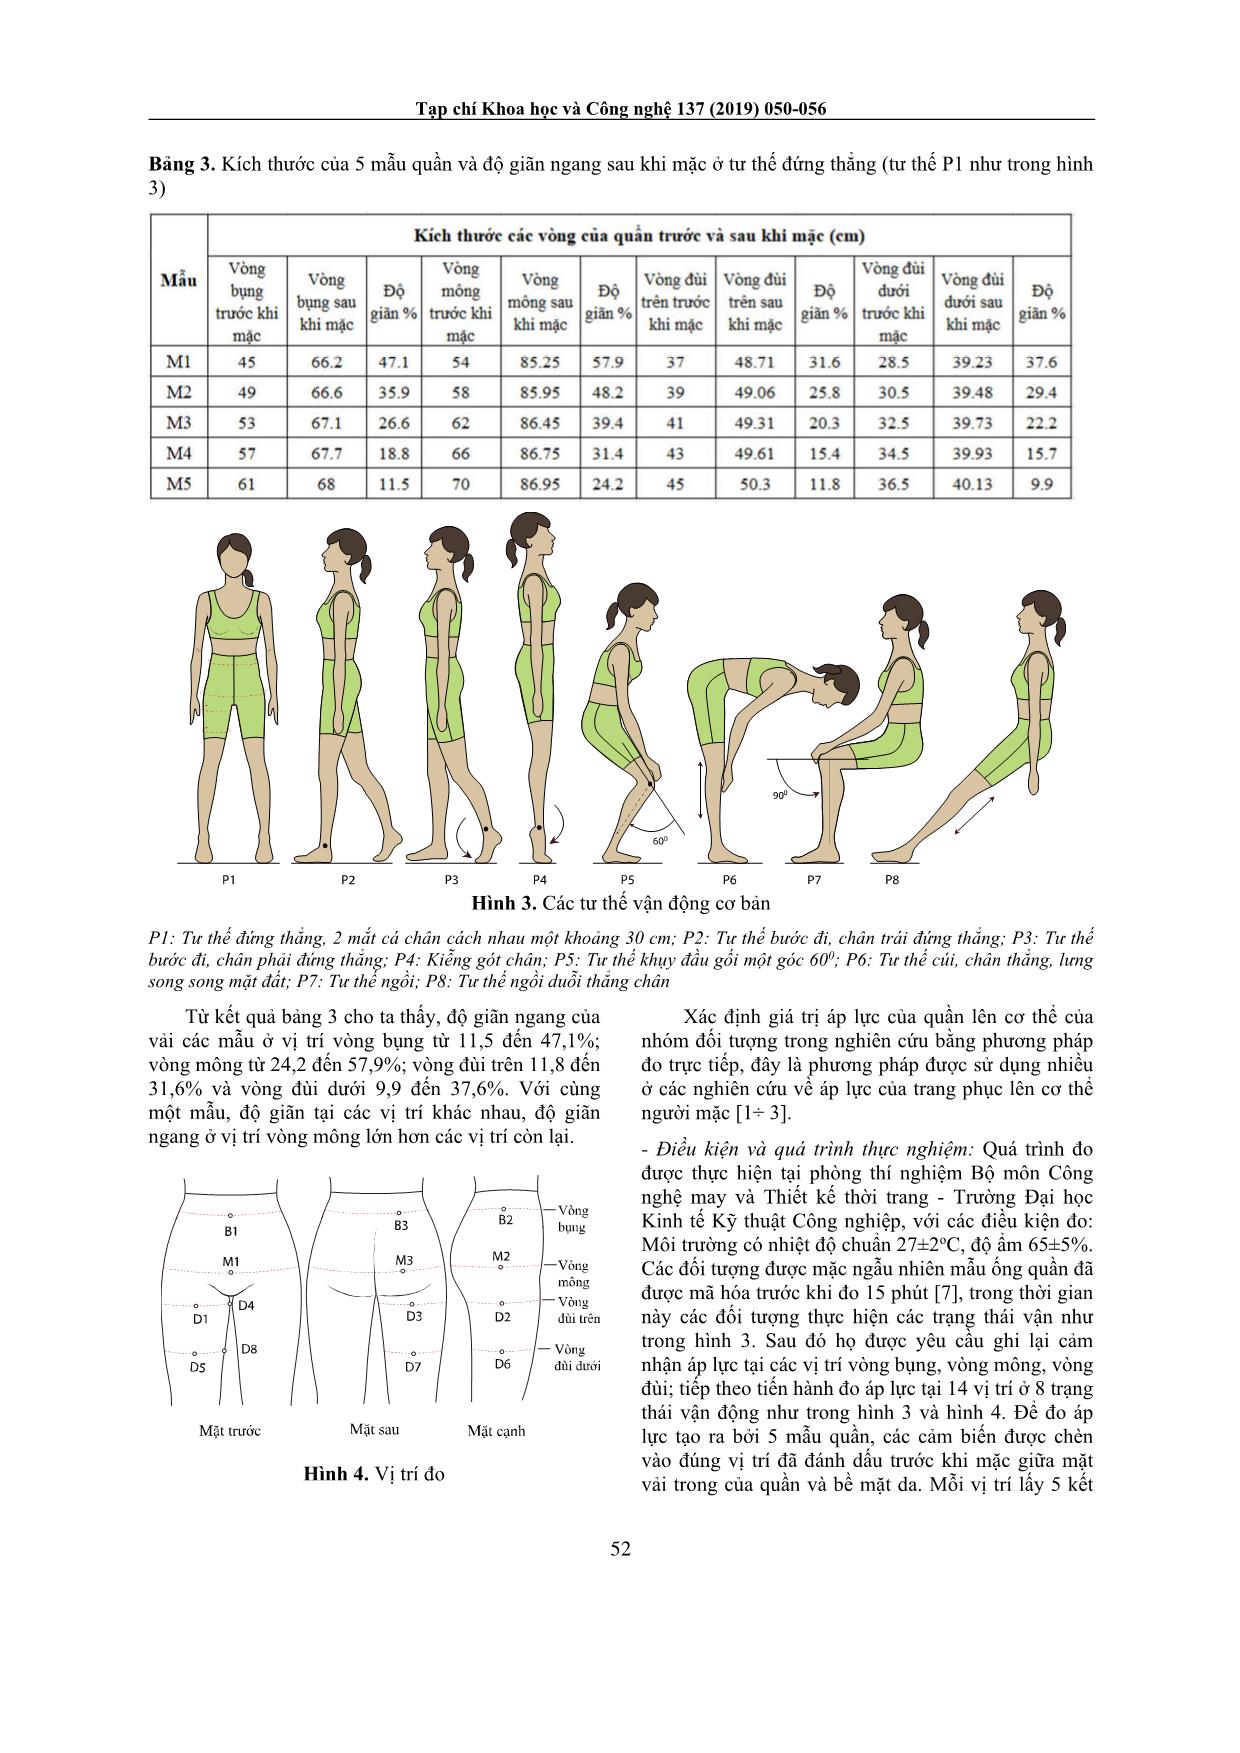 Nghiên cứu xác định áp lực tiện nghi lên cơ thể nữ thanh niên Việt Nam trong quá trình mặc quần định hình tạo dáng cơ thể trang 3